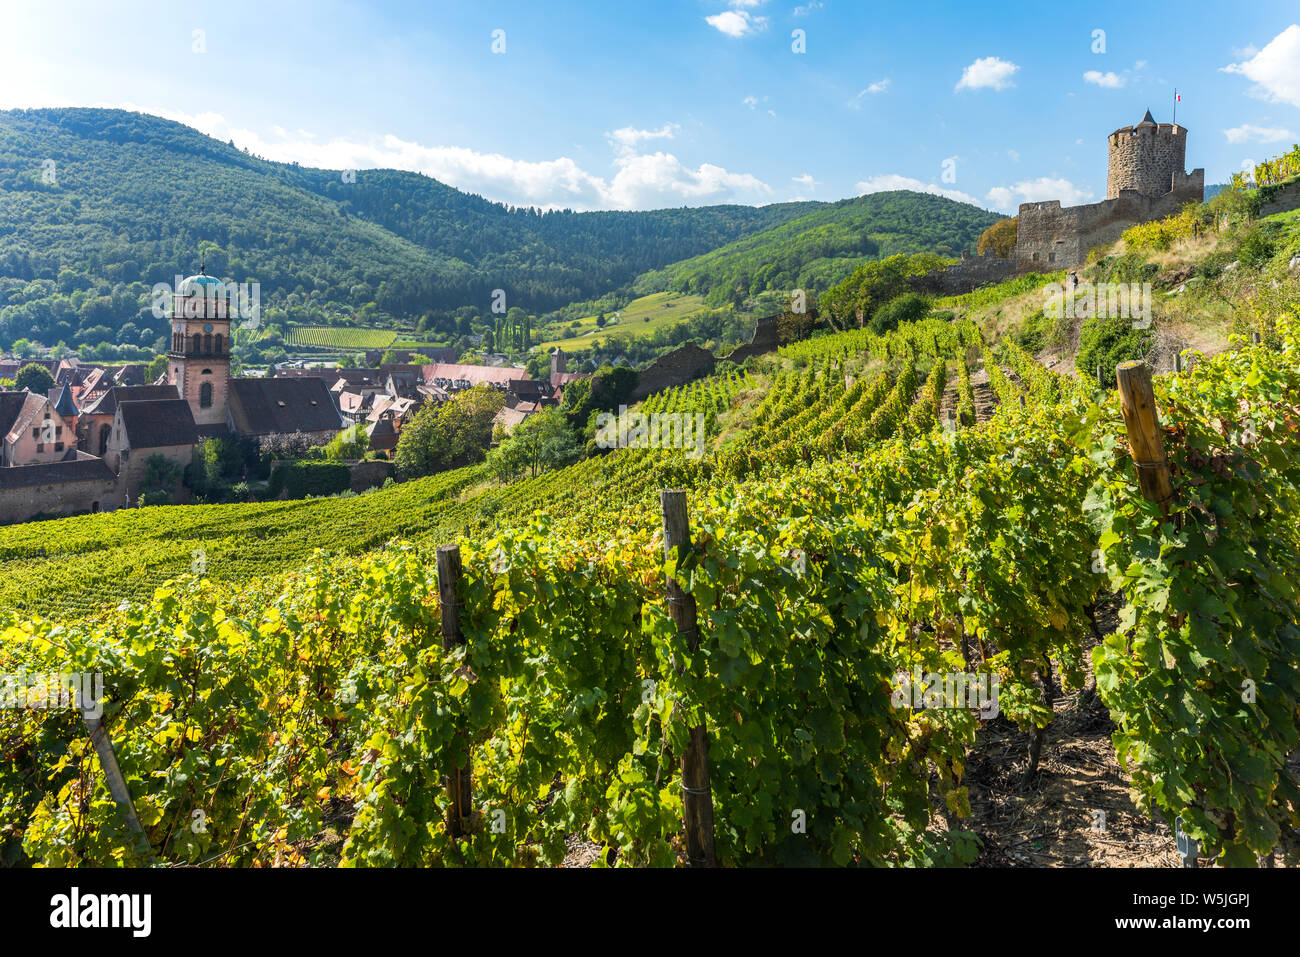 Ciudad Kaysersberg y su castillo, la Ruta del Vino de Alsacia, Francia, rodeado por viñedos y montañas Vosges Foto de stock